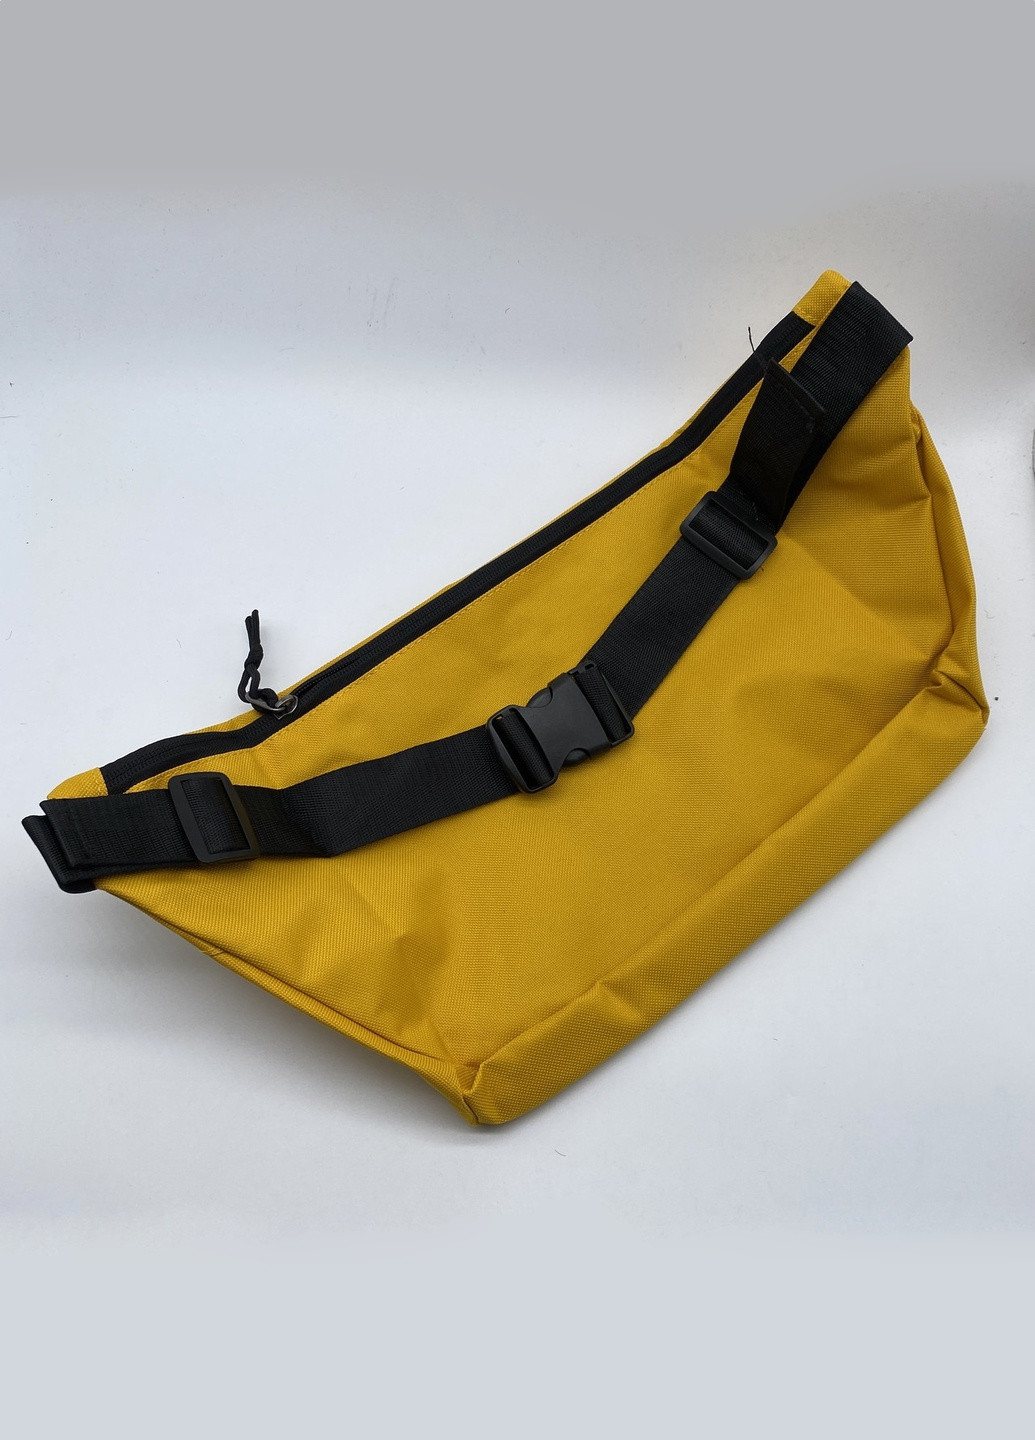 Бананка большая Tech Hip Pack поясная сумка найк желтая Nike (259469150)